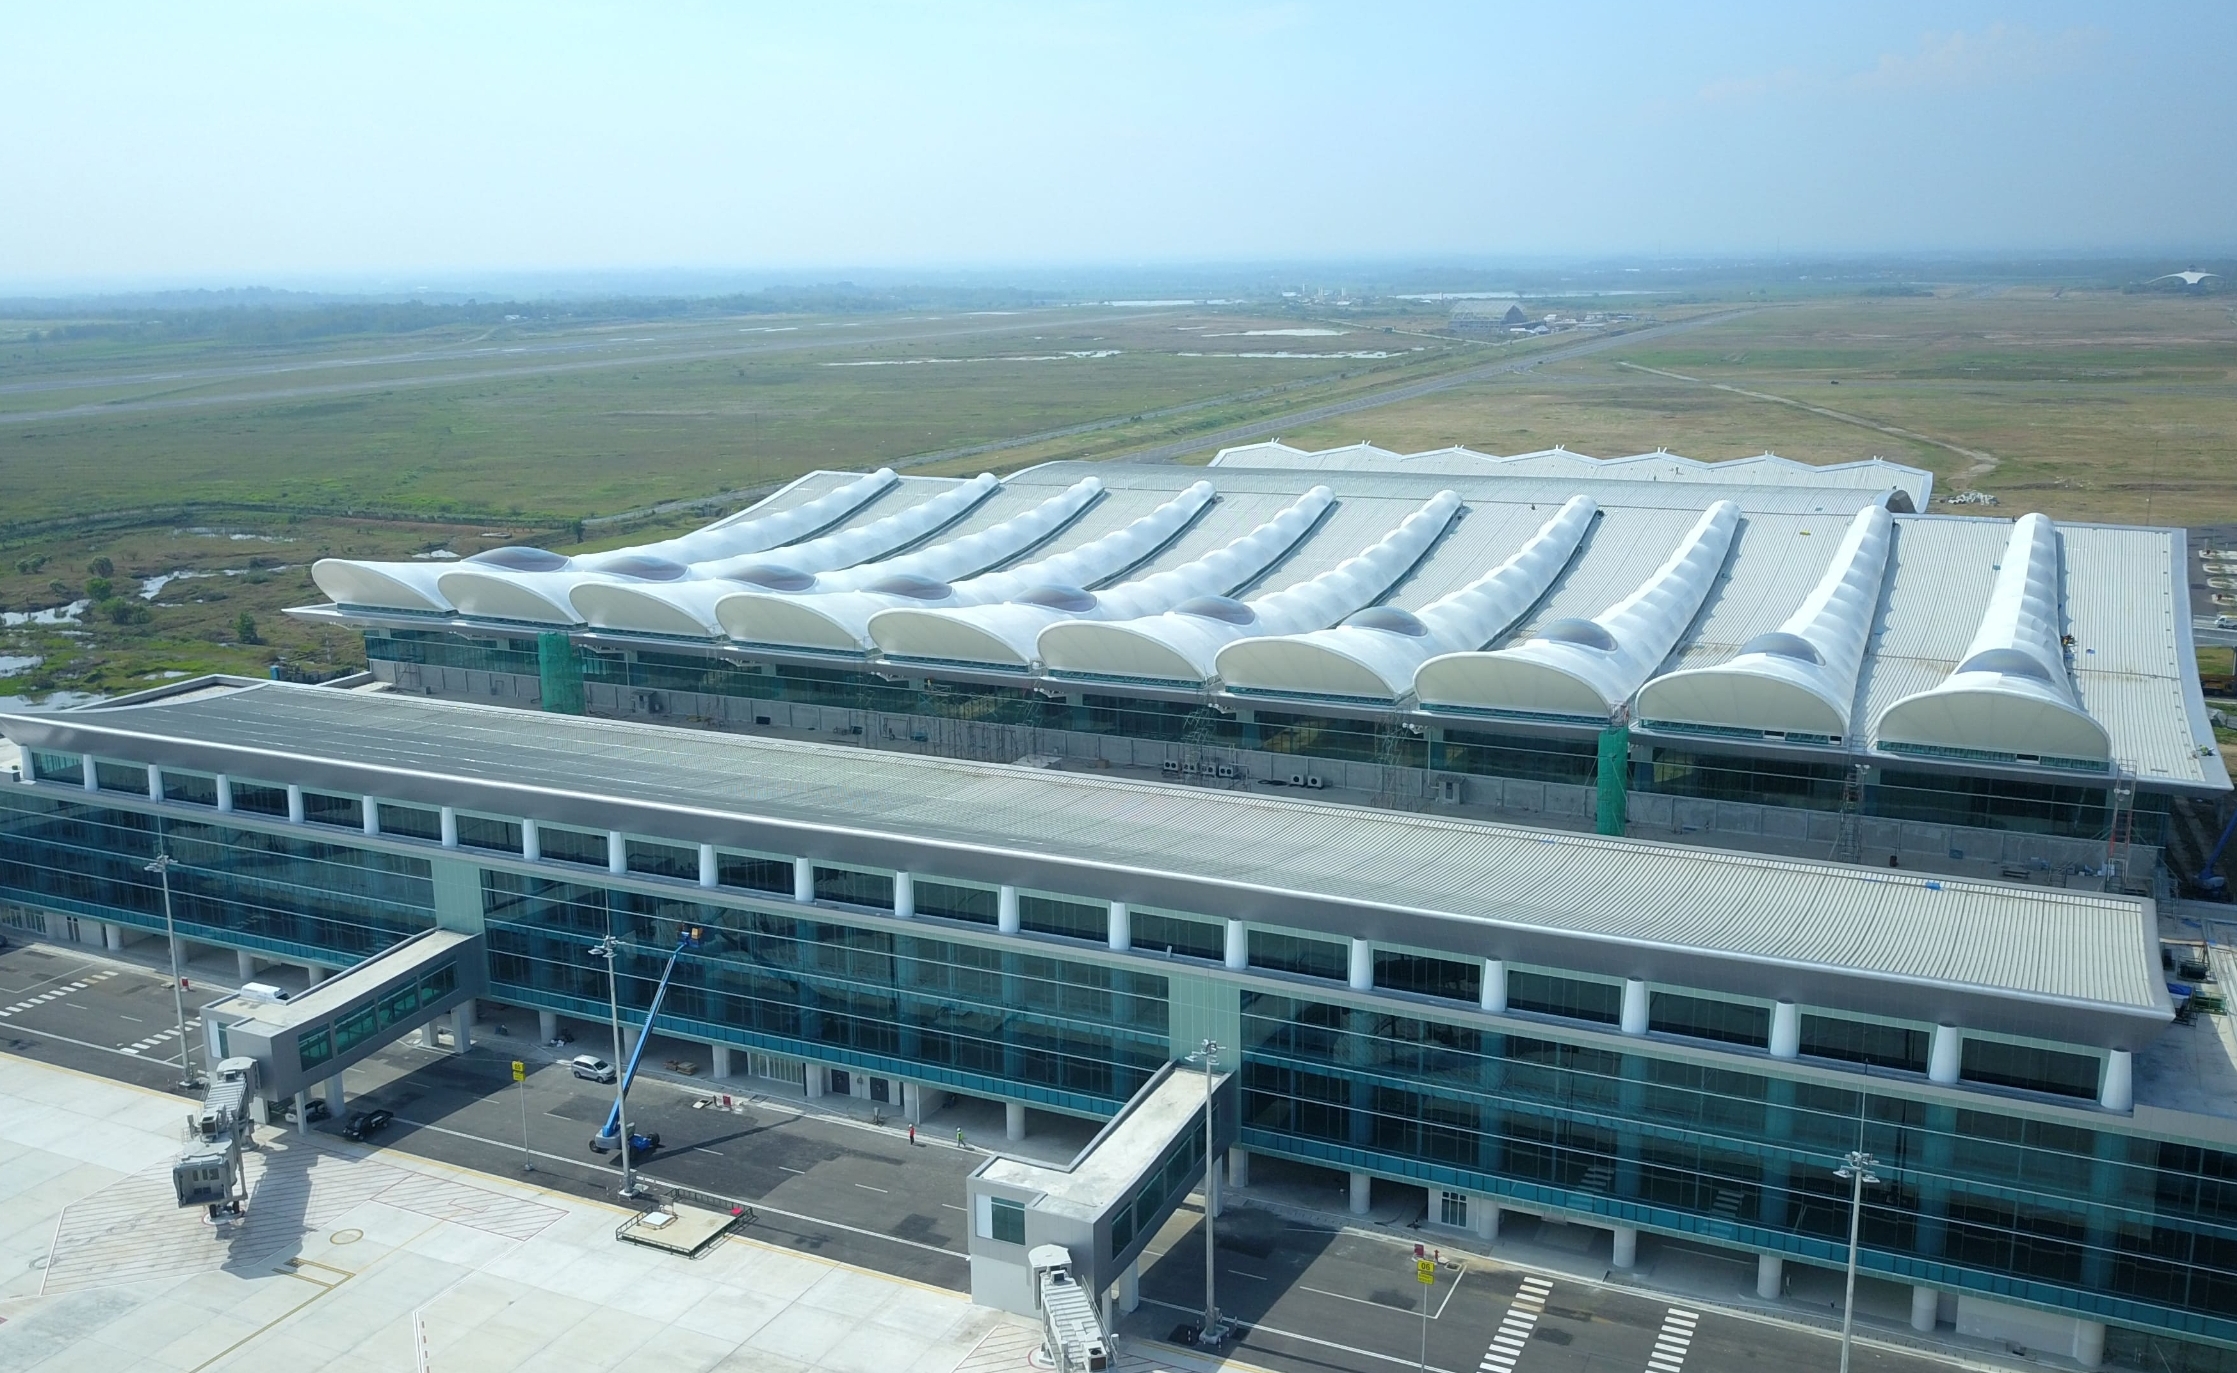 6 Bandara dengan Arsitektur Unik di Indonesia, Ada BIJB Kertajati Majalengka Loh